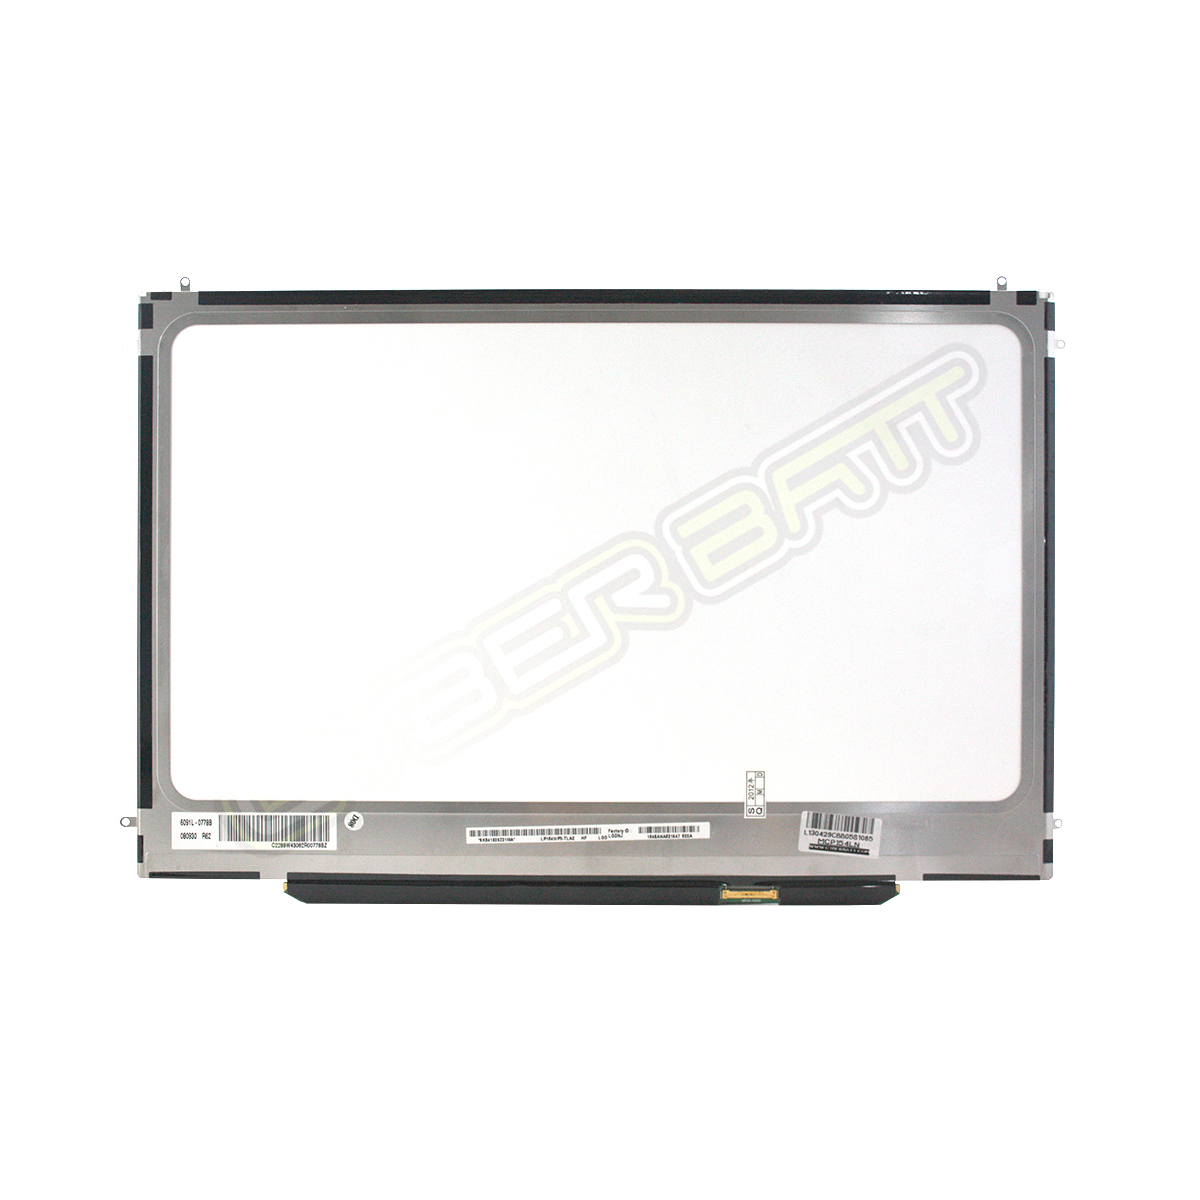 Screen Panel Macbook Pro 15 Unibody A1286 LP154WP3 (TL)(A2) 1440x900 No Case